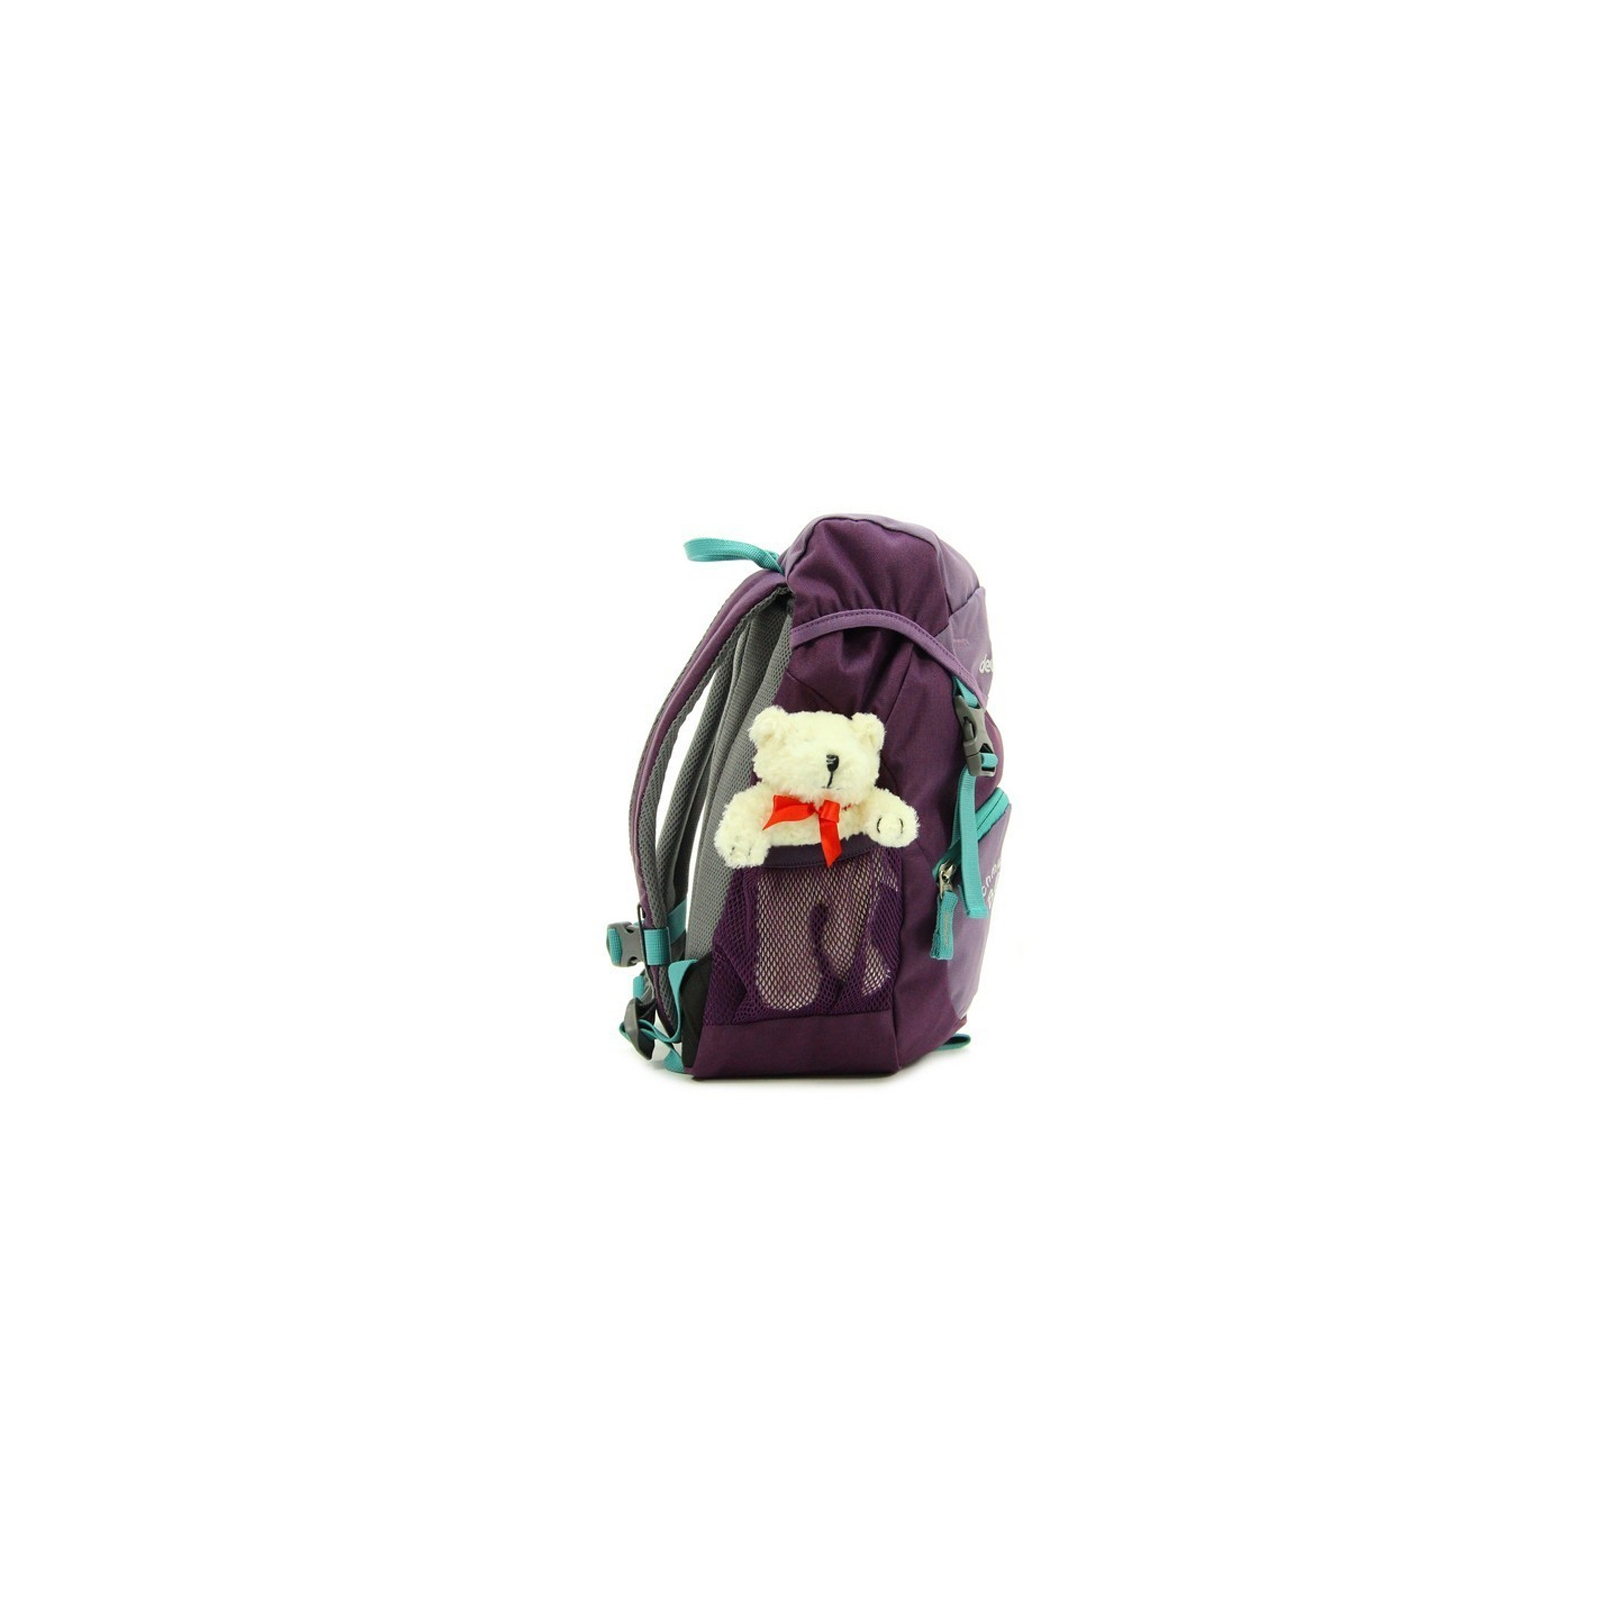 Рюкзак школьный Deuter Schmusebar 5538 flieder-plum (3612017 5538) изображение 3